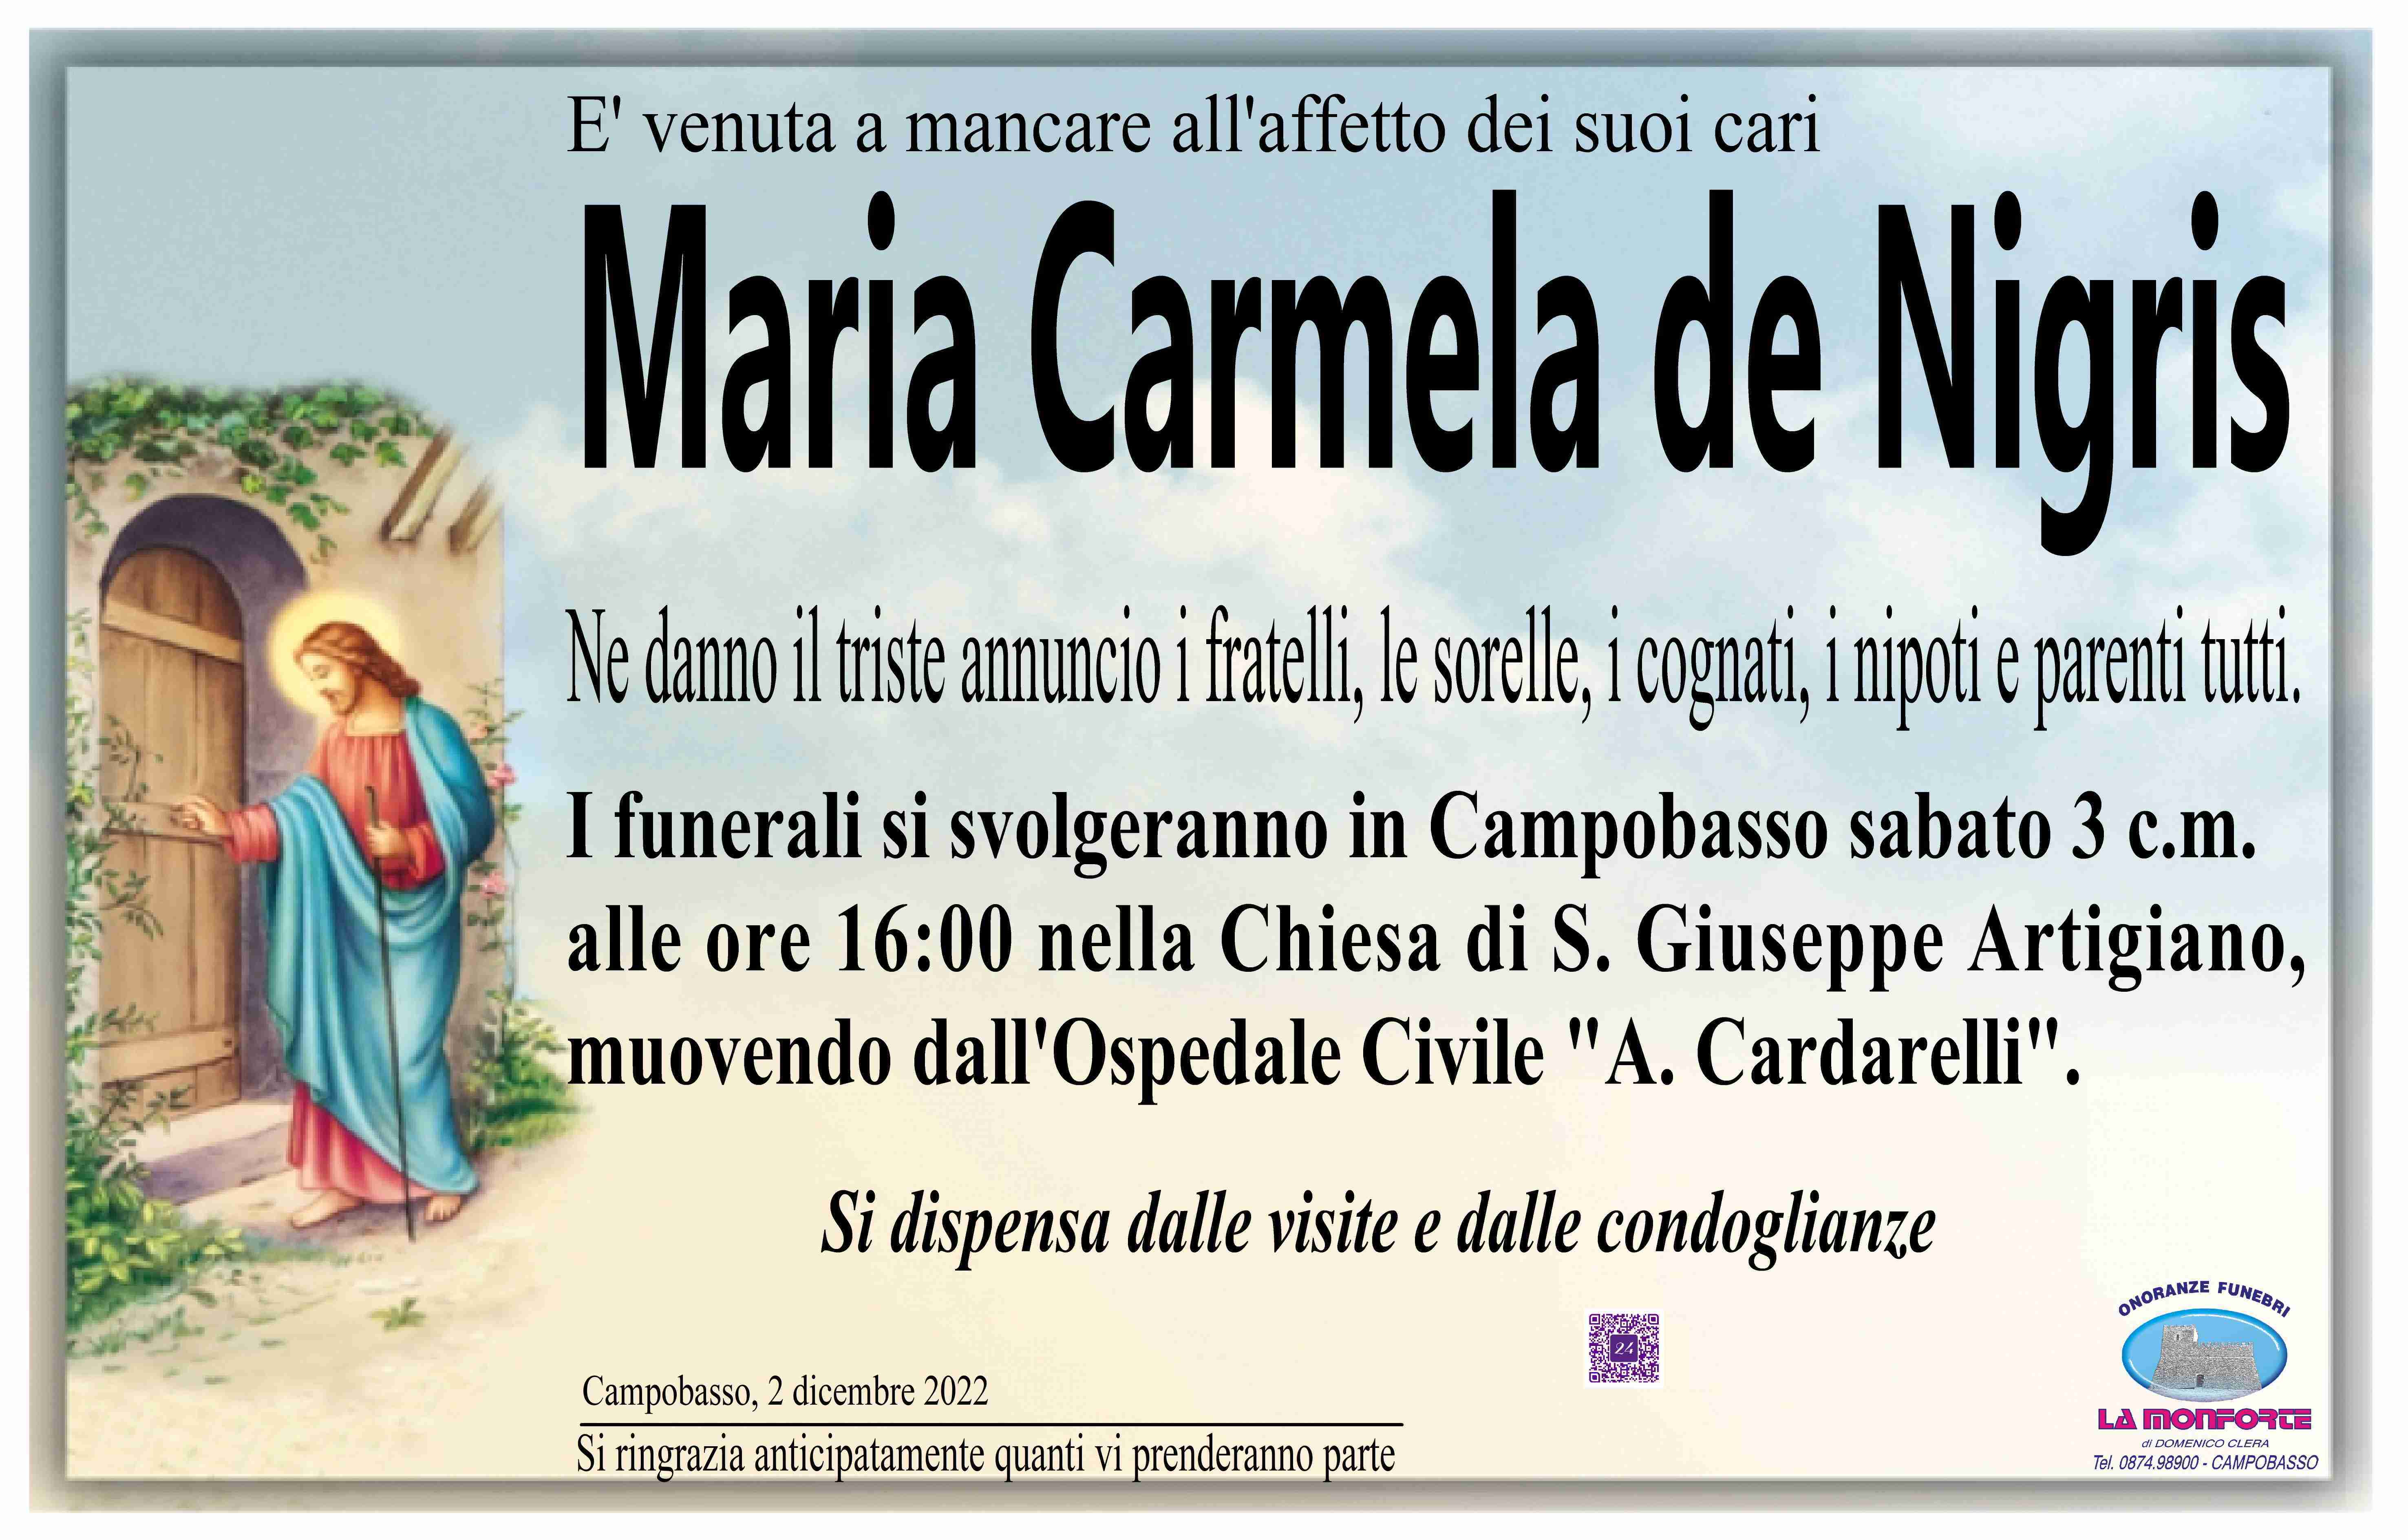 Maria Carmela de Nigris